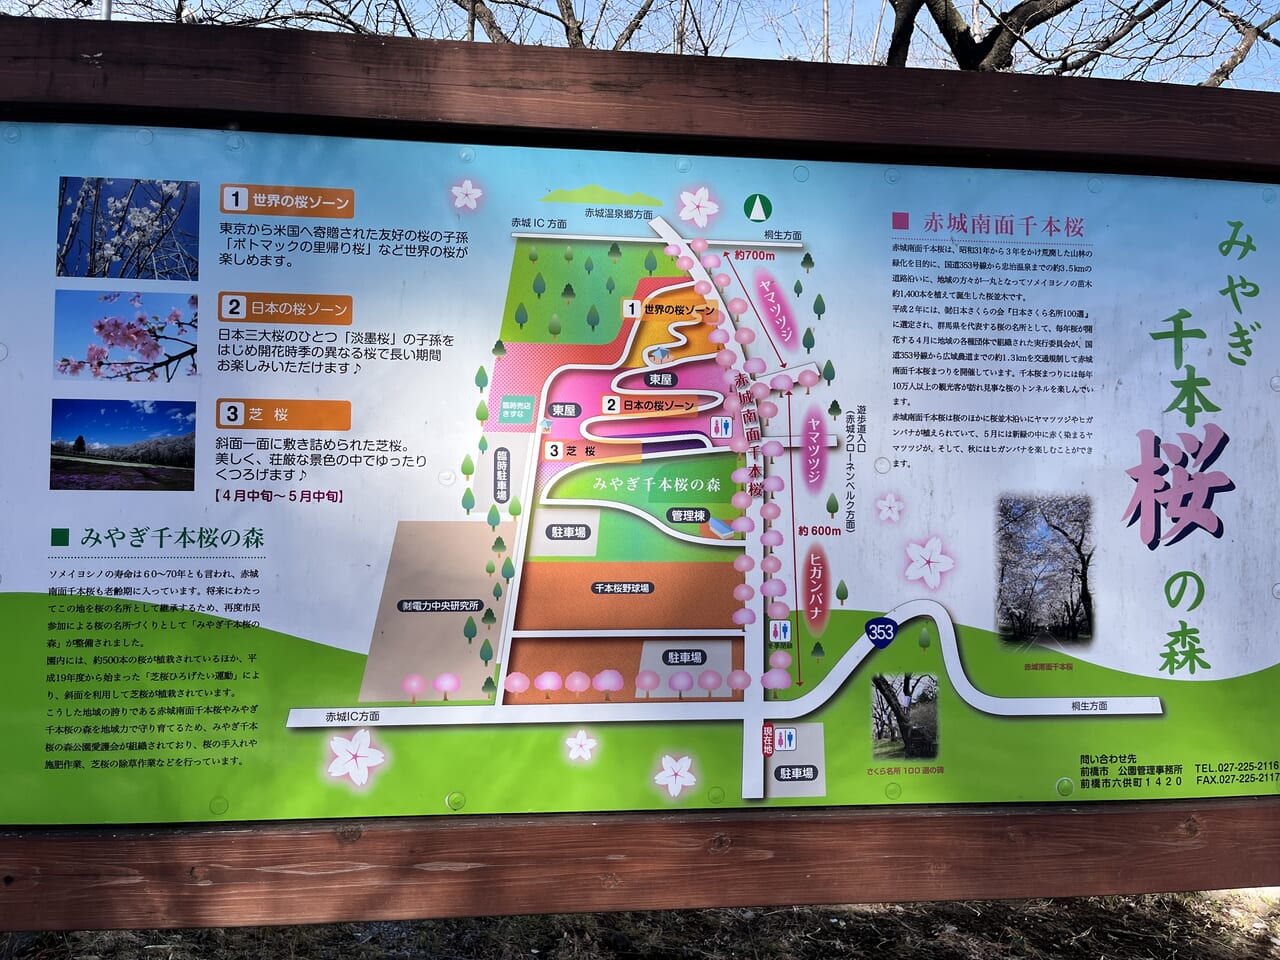 「赤城南面千本桜まつり」が開催される「みやぎ千本桜の森」のマップ